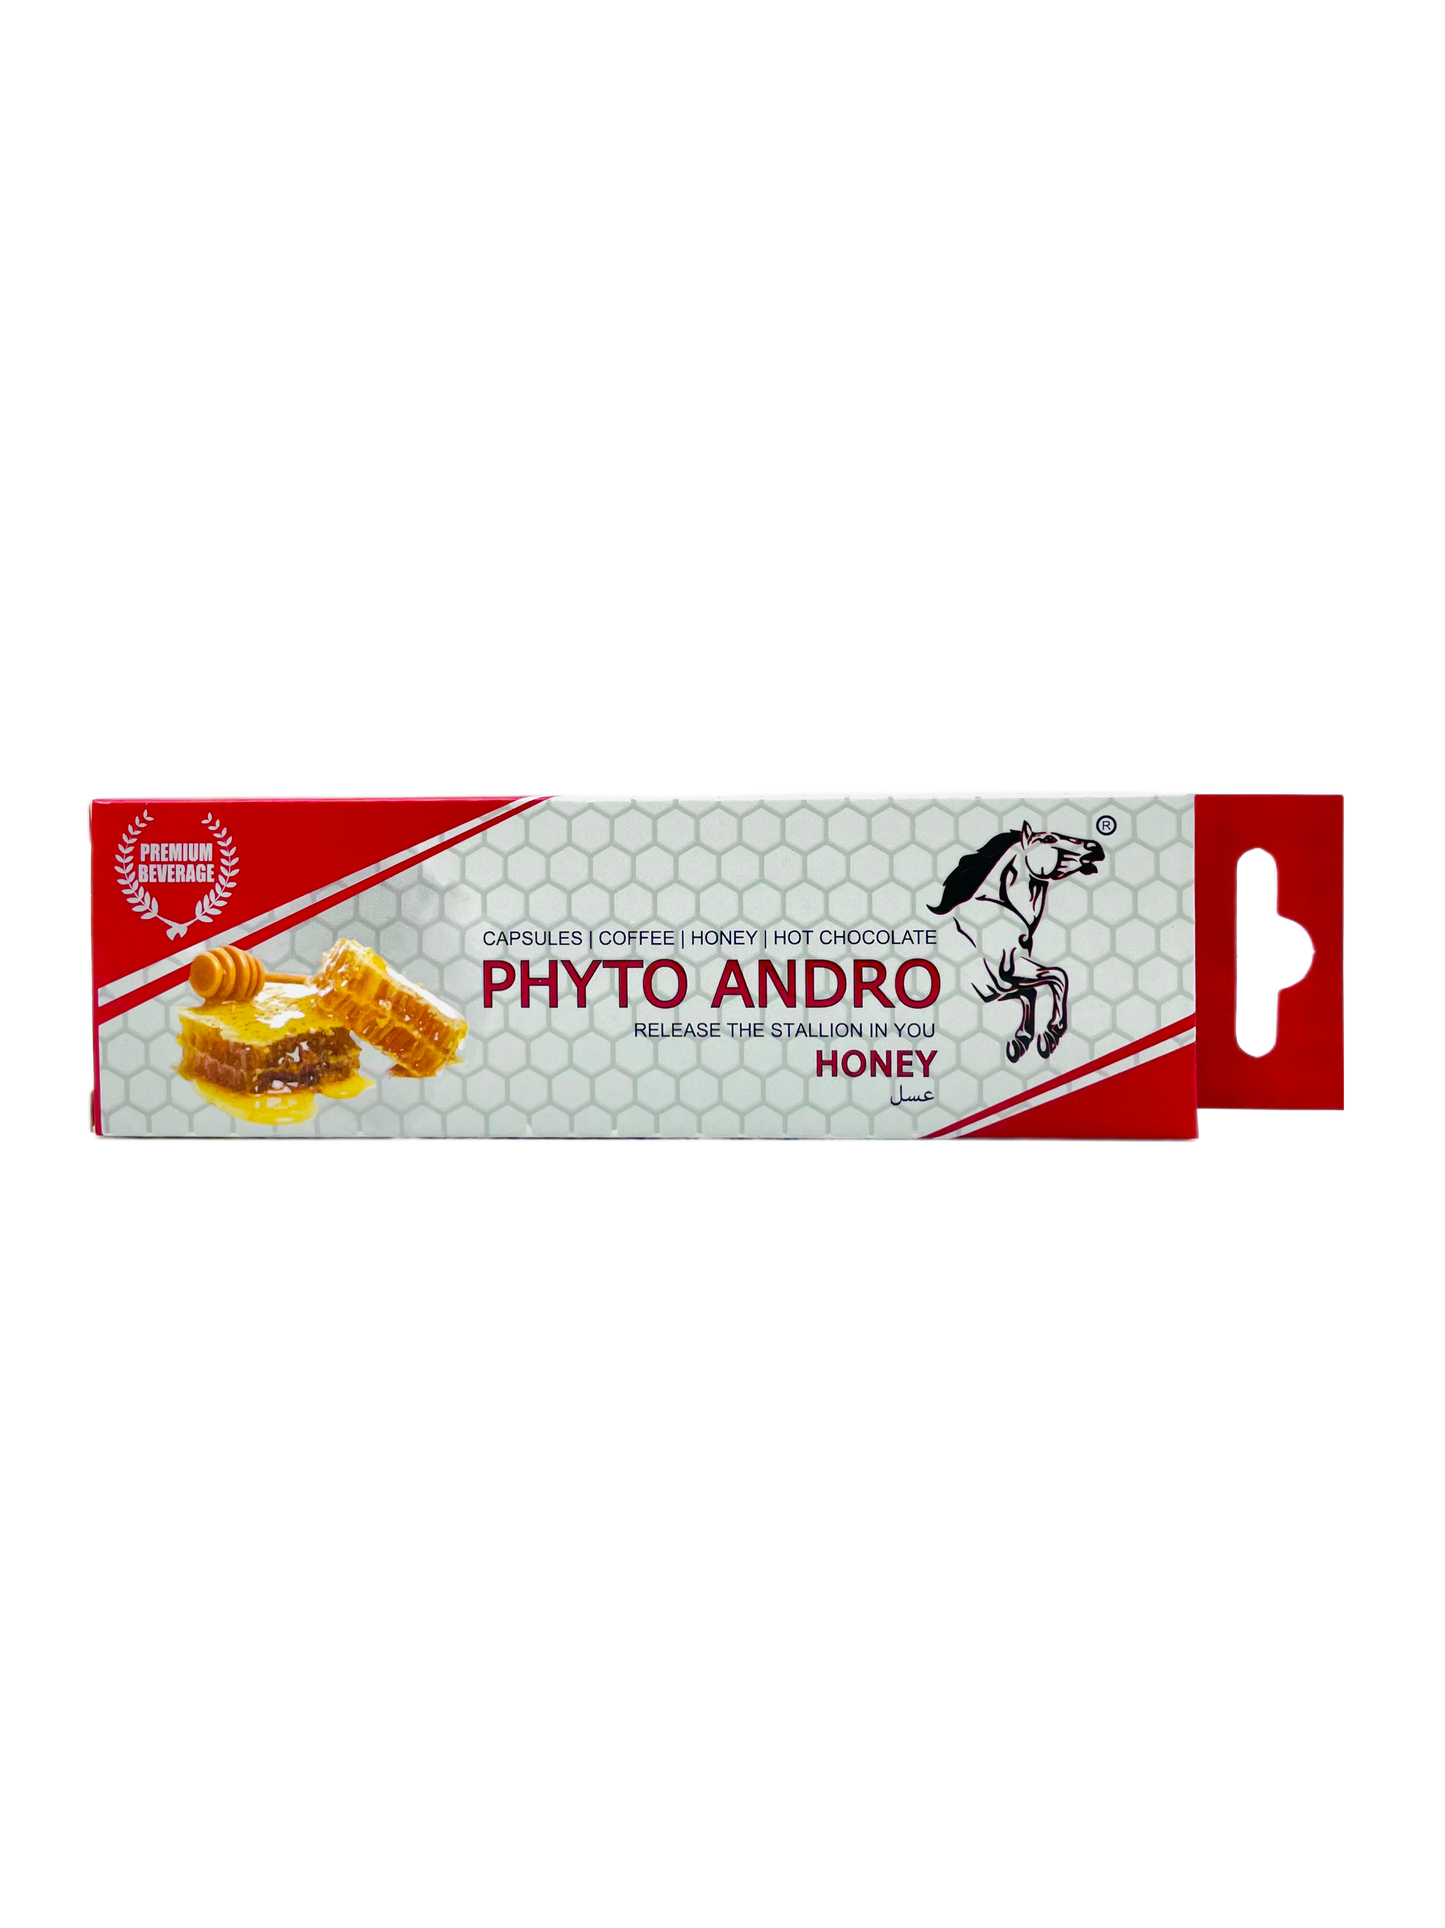 Phyto Andro Honey Sachet 10g